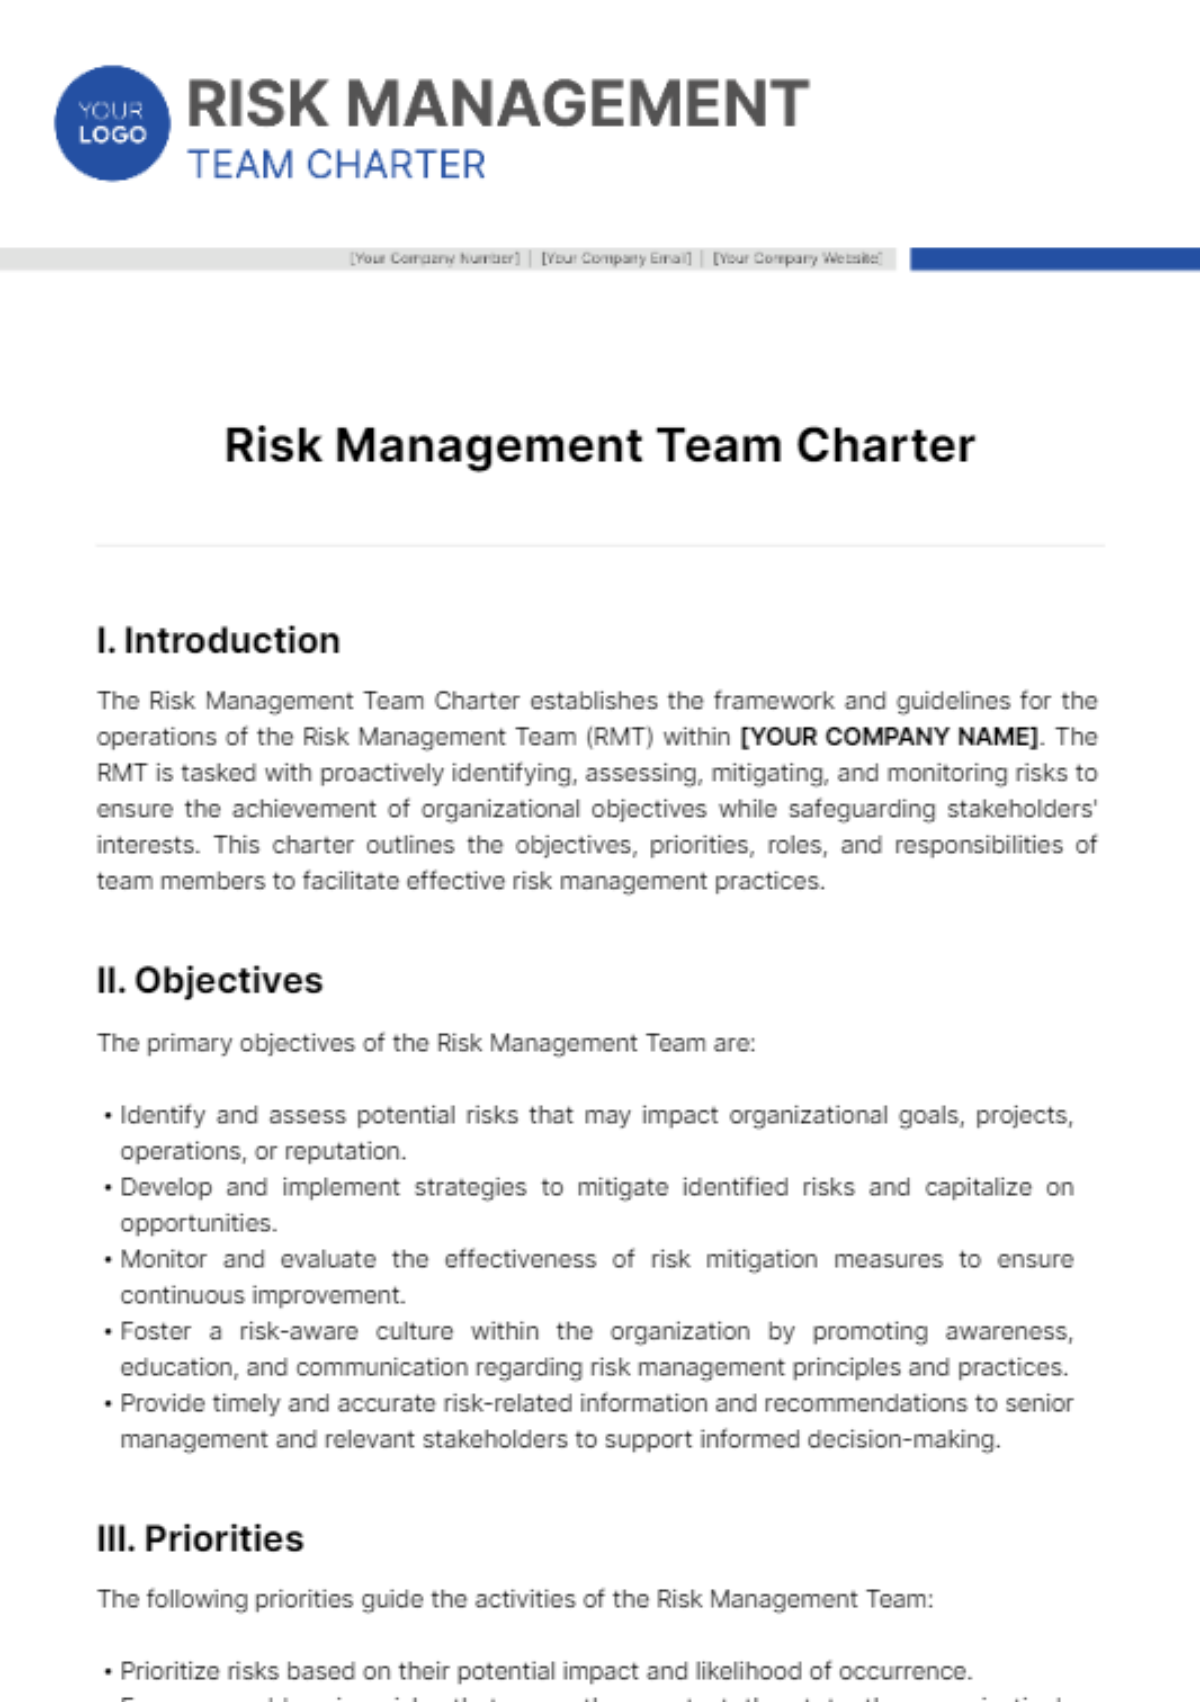 Risk Management Team Charter Template